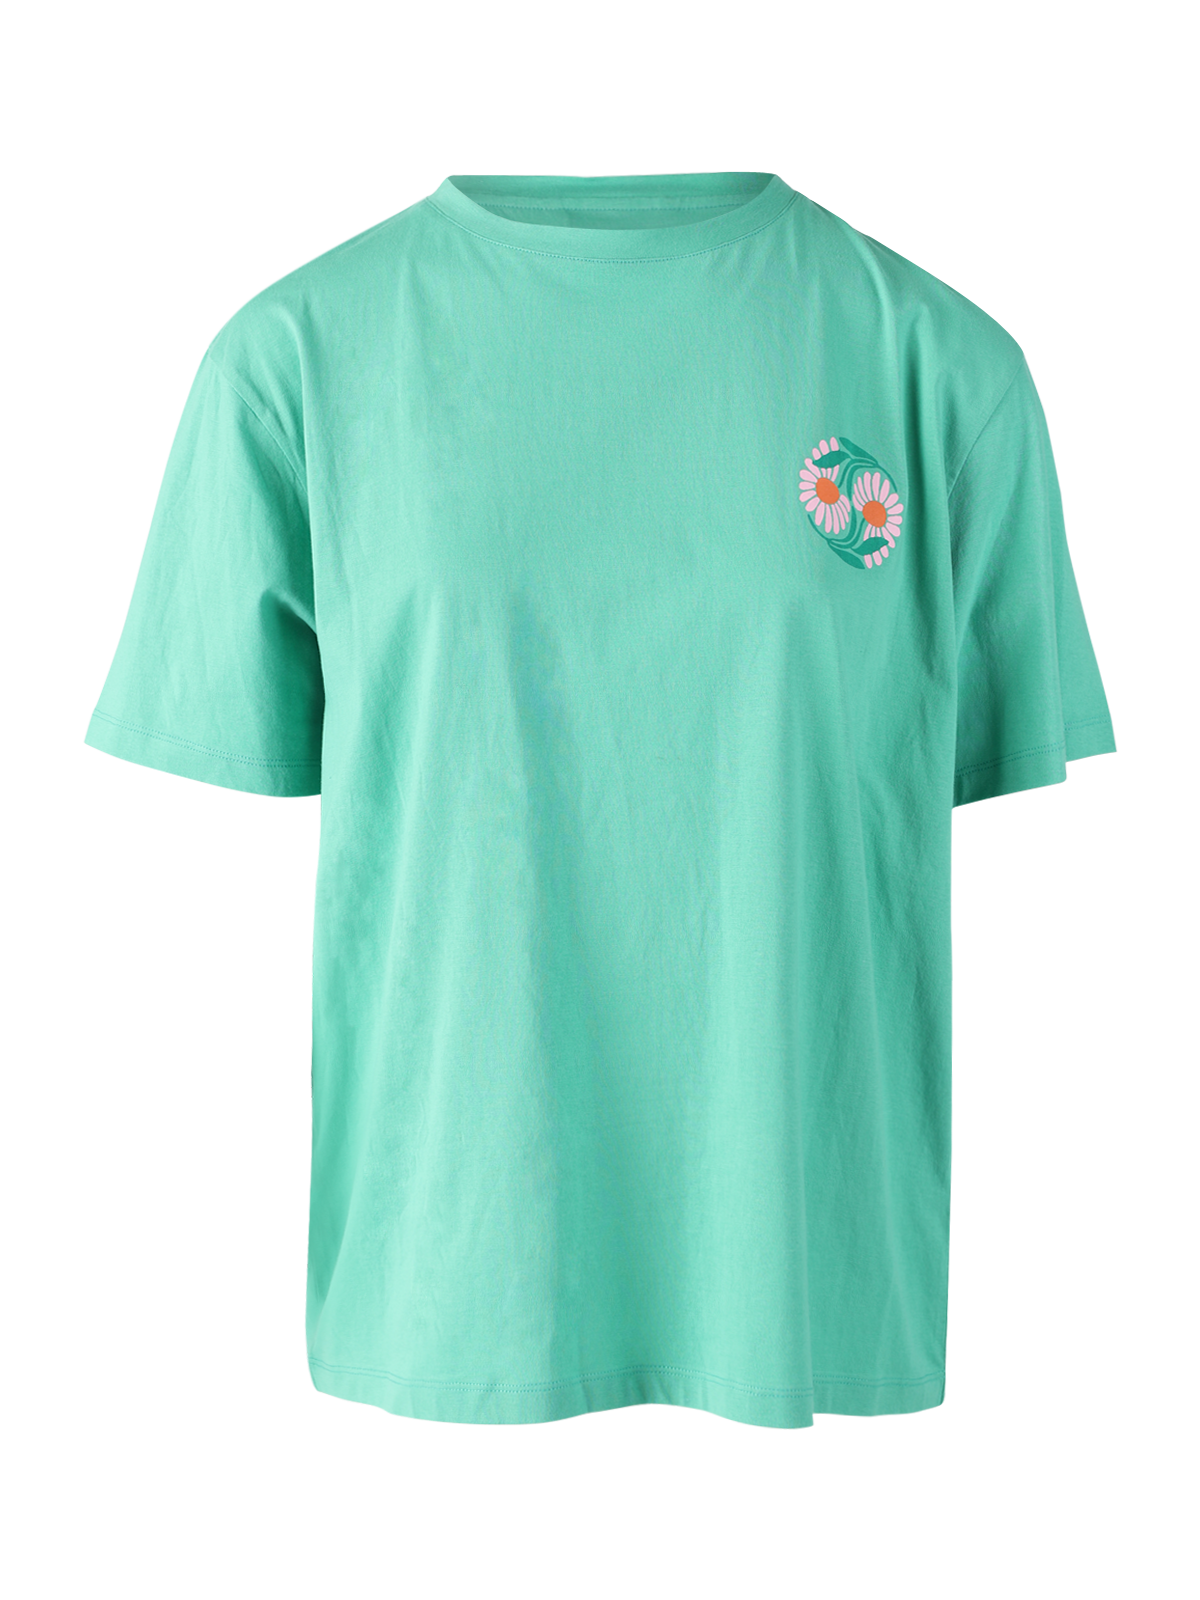 Imani-R Damen T-Shirt | Grün